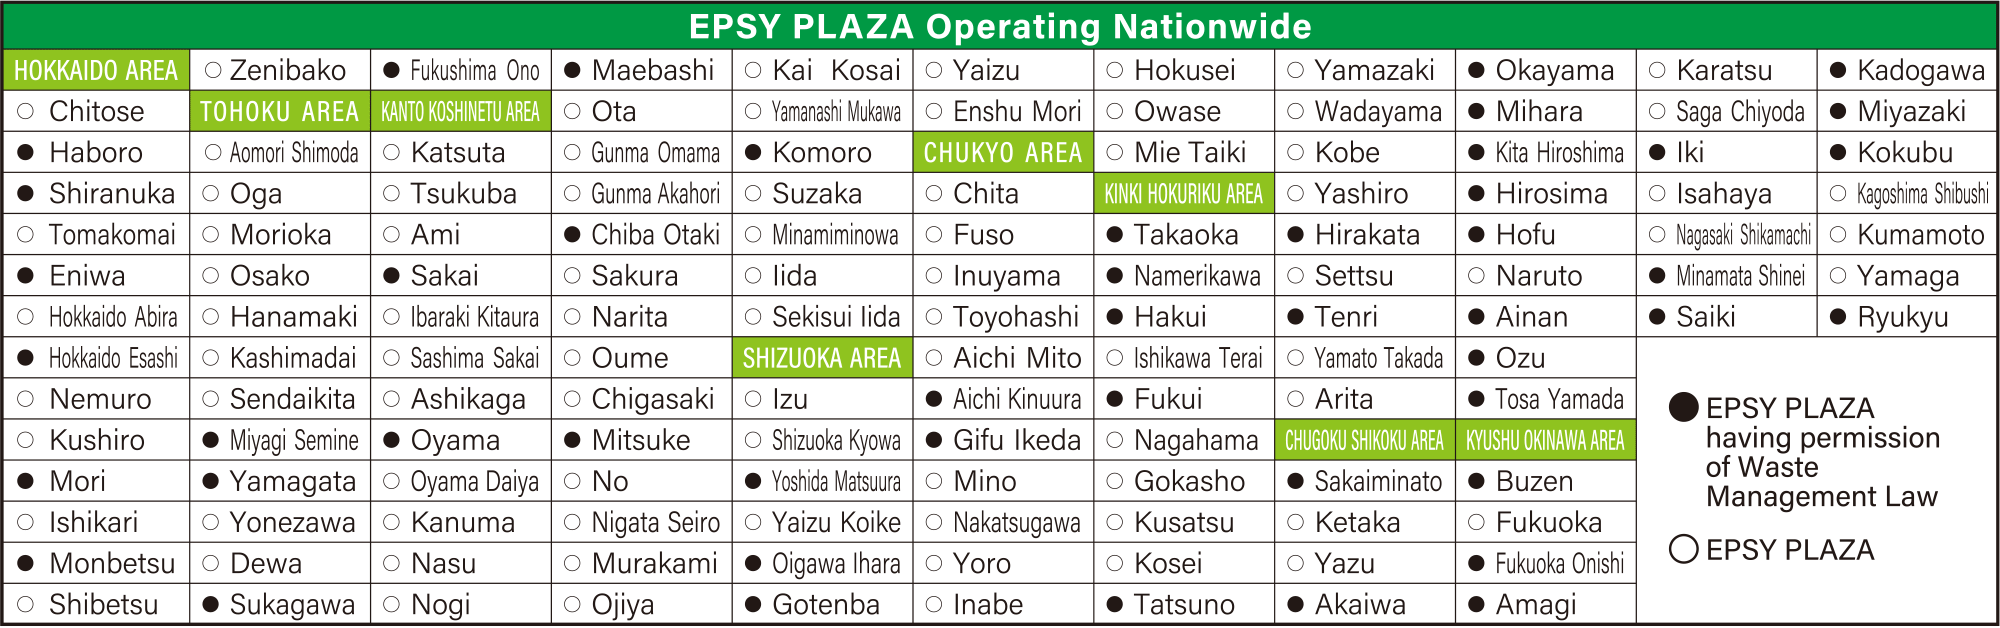 EPSY PLAZA Operating Nationwide